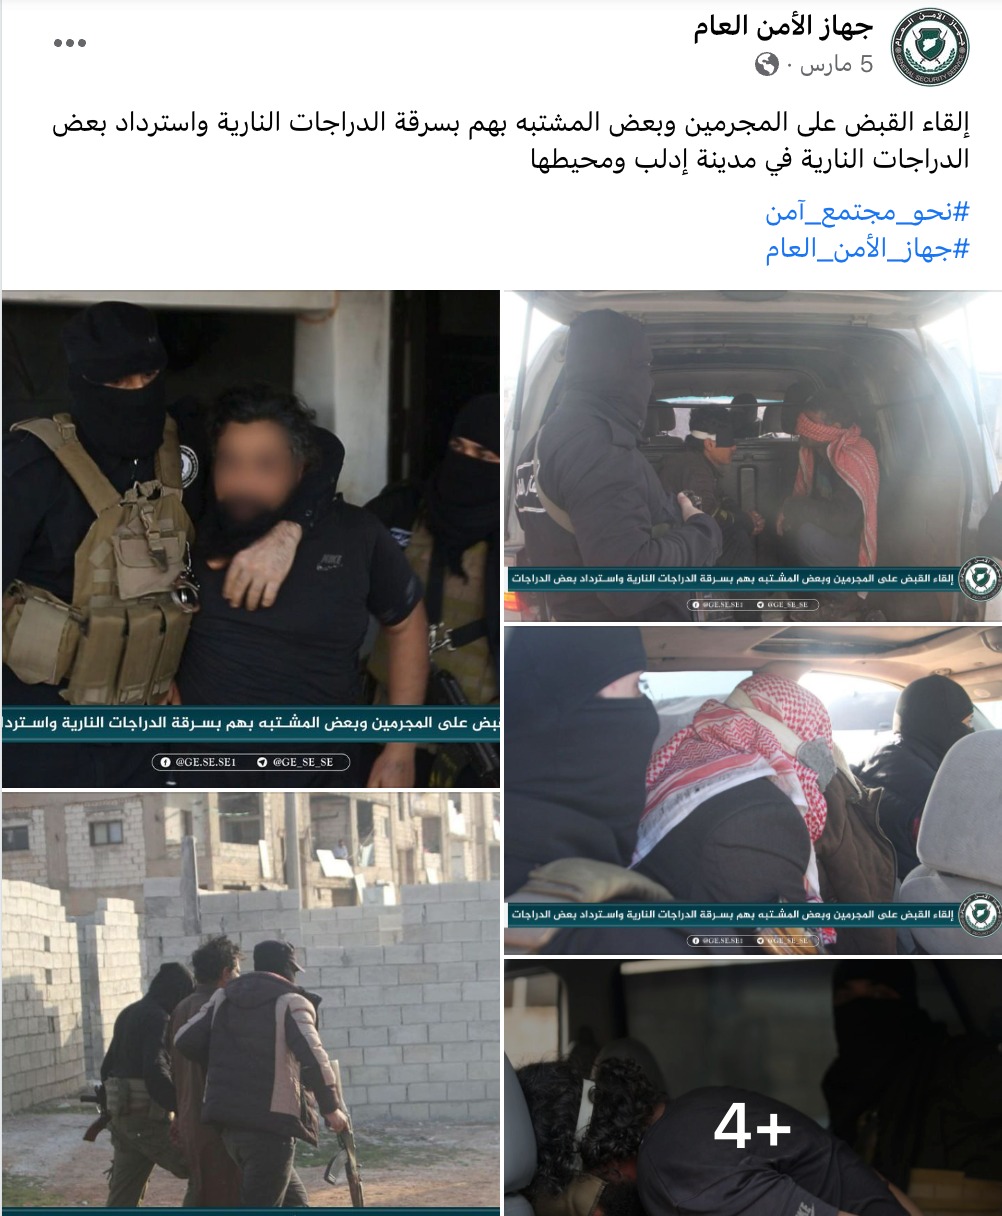 إلقاء القبض على المجرمين وبعض المشتبه بهم بسرقة الدراجات النارية واسترداد بعض الدراجات النارية في مدينة إدلب